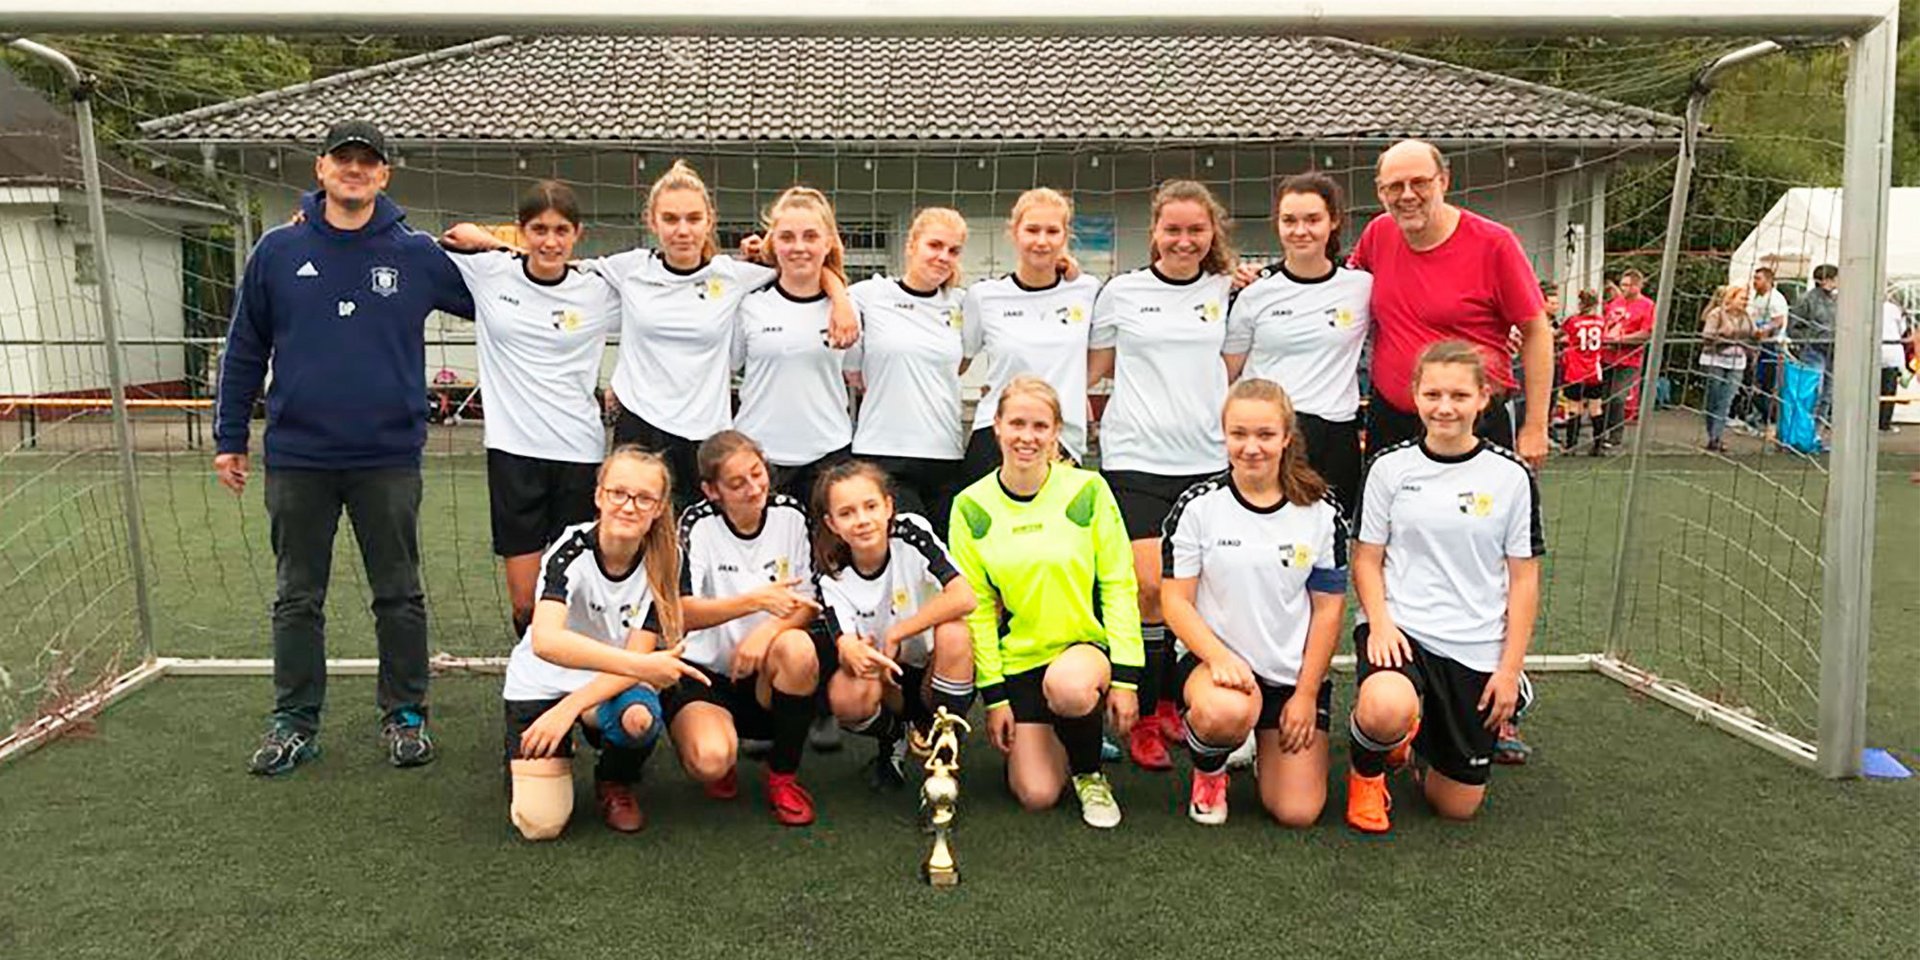 Immer gut drauf: die U17 Juniorinnen des BSV Viktoria Bielstein hatten ihren Spaß in Morsbach